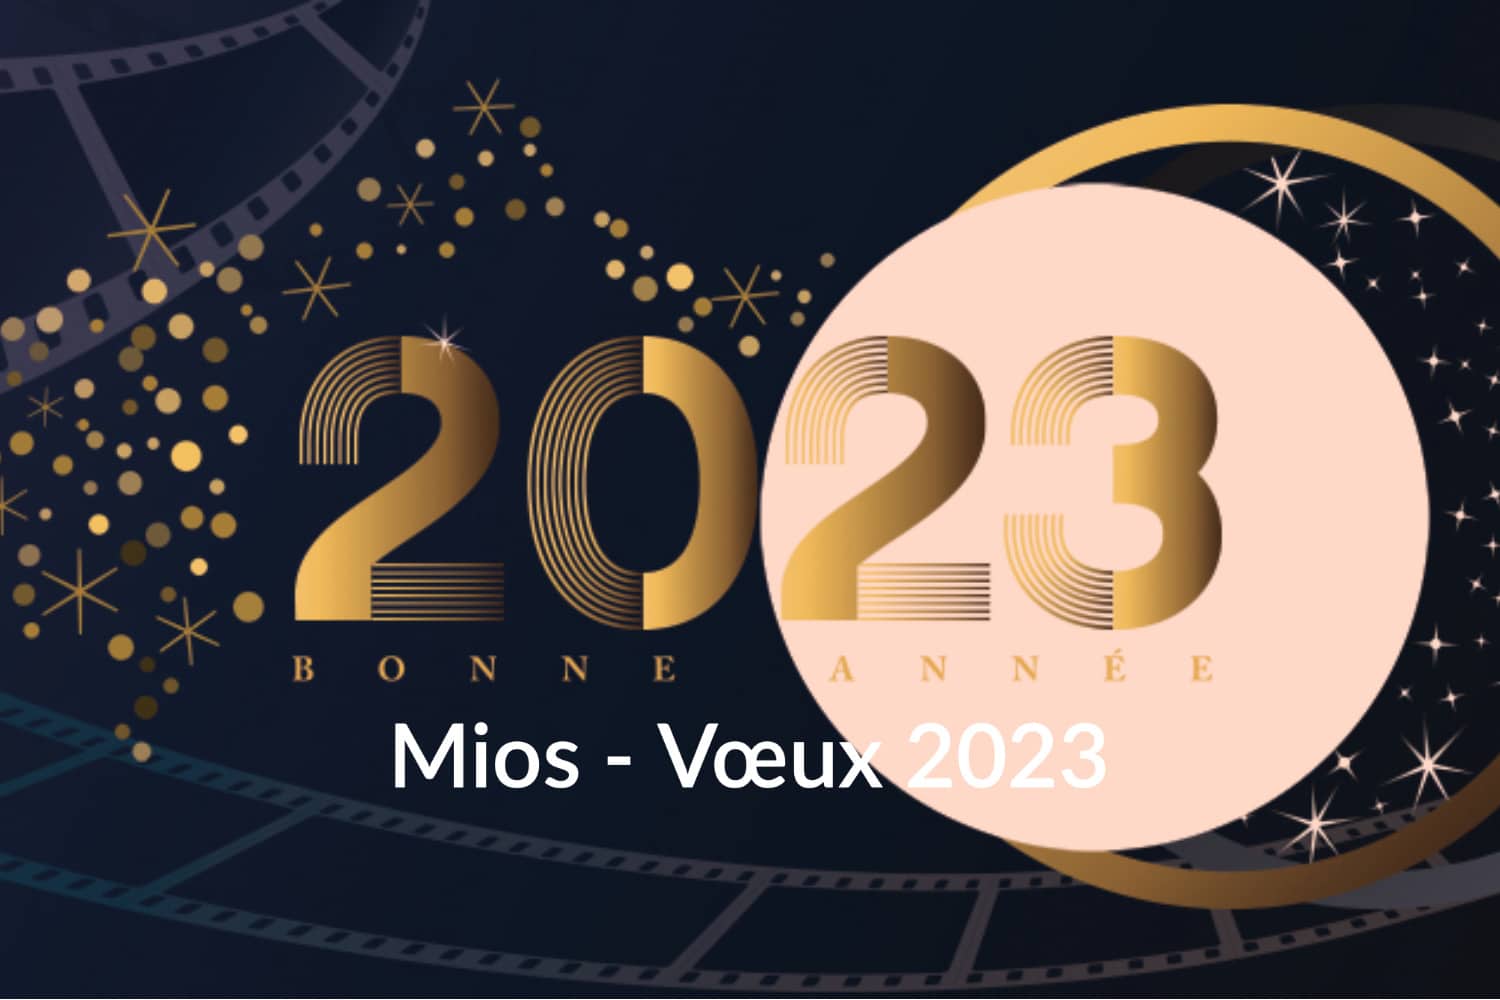 La ville de Mios vous invite à participer à sa cérémonie de vœux pour l'année 2023 le mercredi 11 janvier à 19h au Nouveau Complexe Sportif.